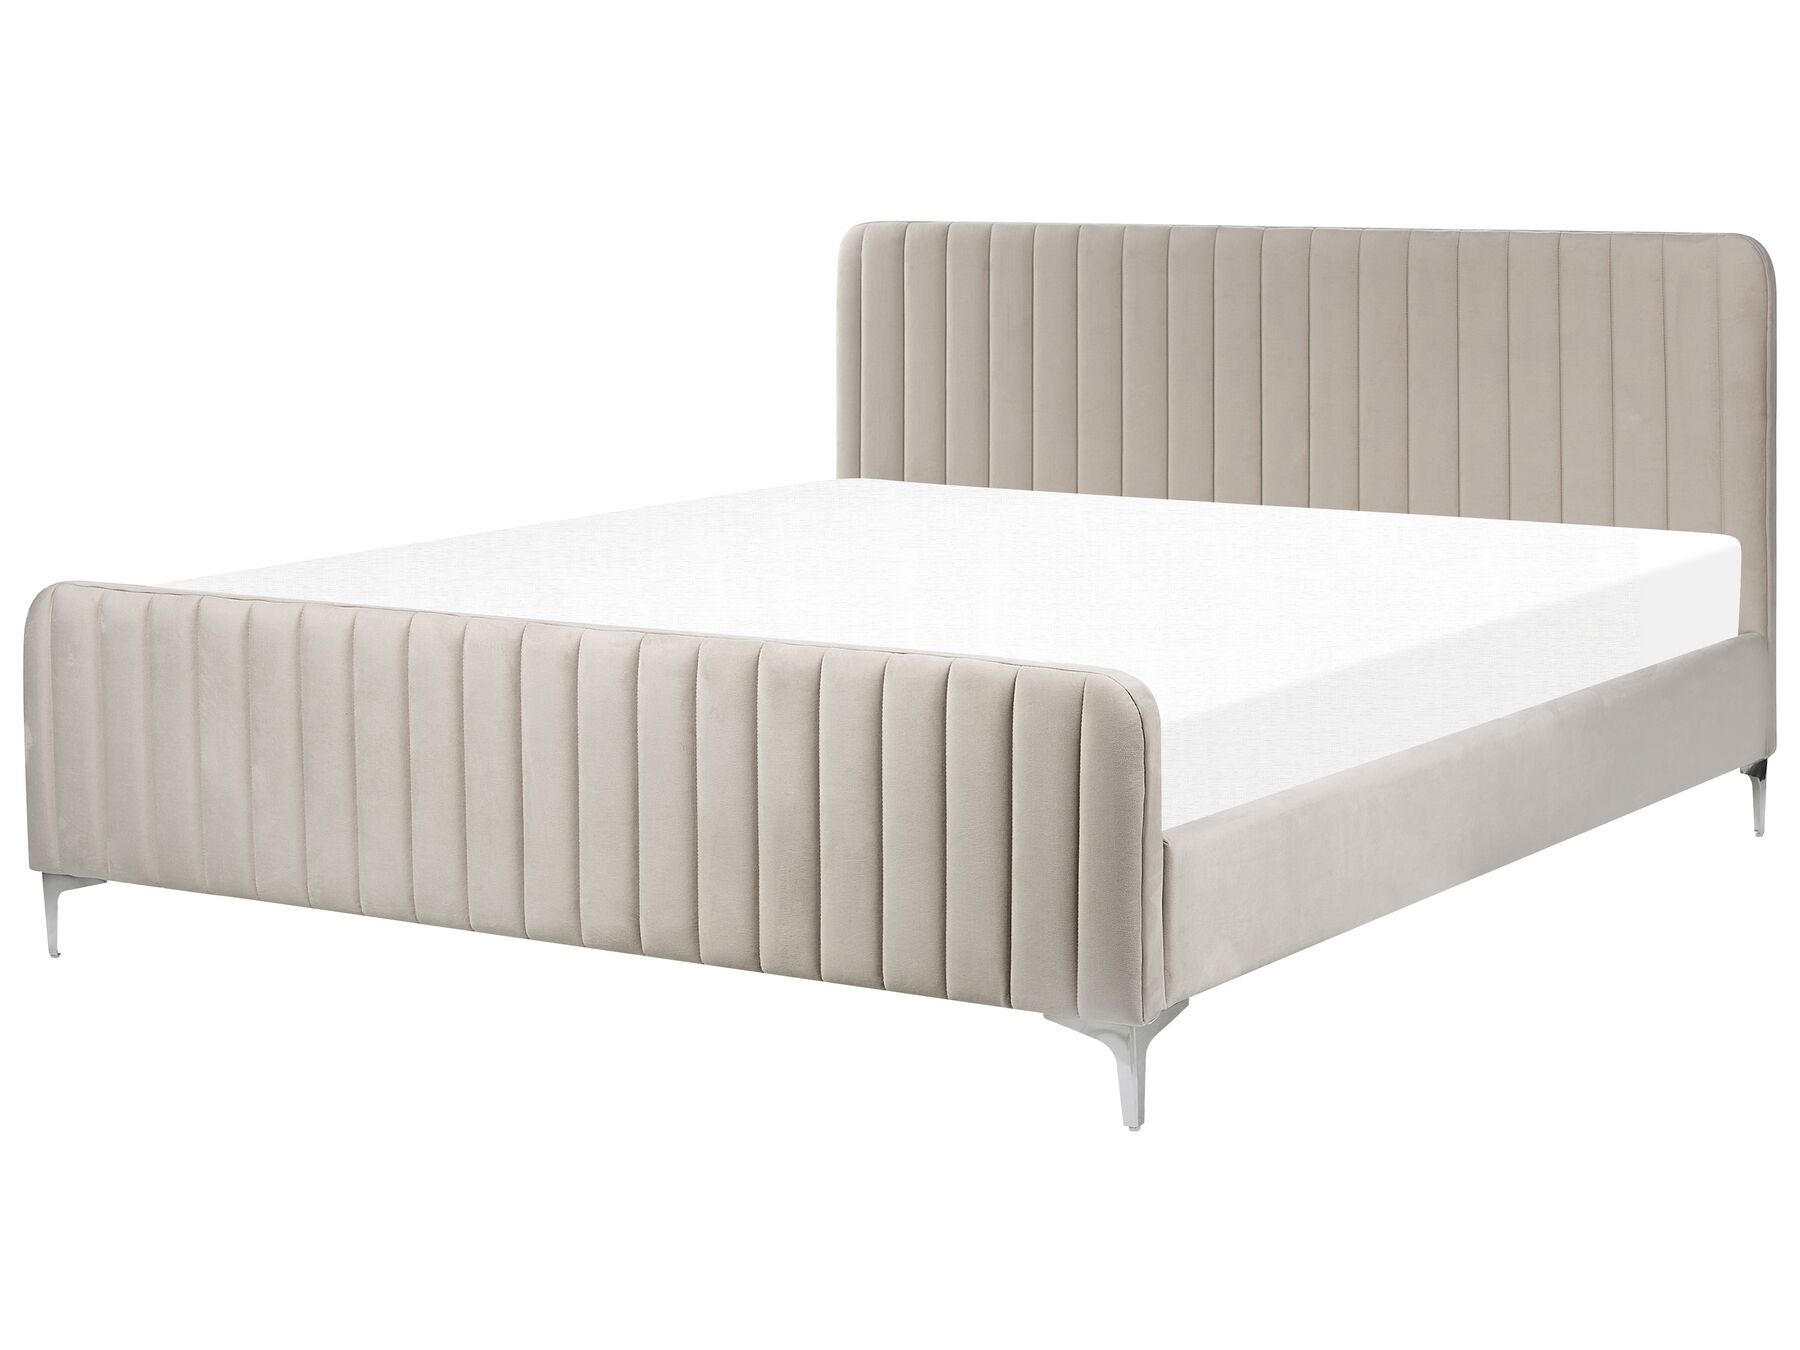 Sametová čalouněná postel s roštem 180 x 200 cm šedá LUNAN_803483